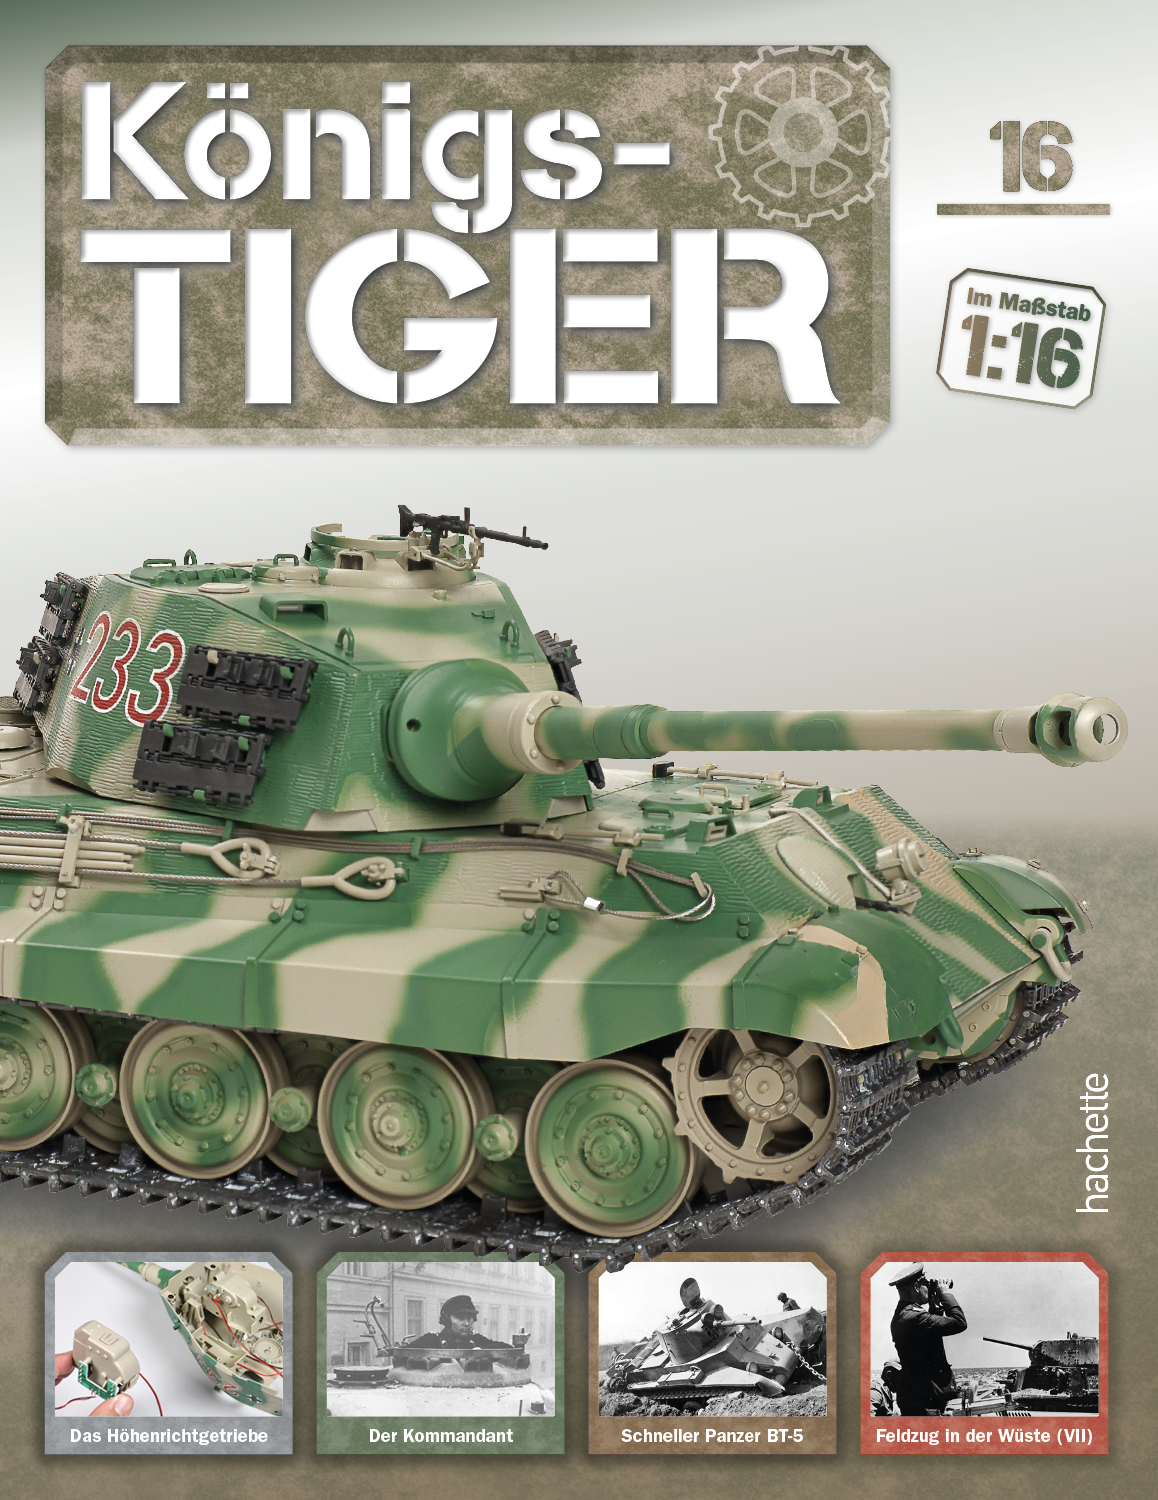 Alle Kampfpanzer tiger 2 im Blick